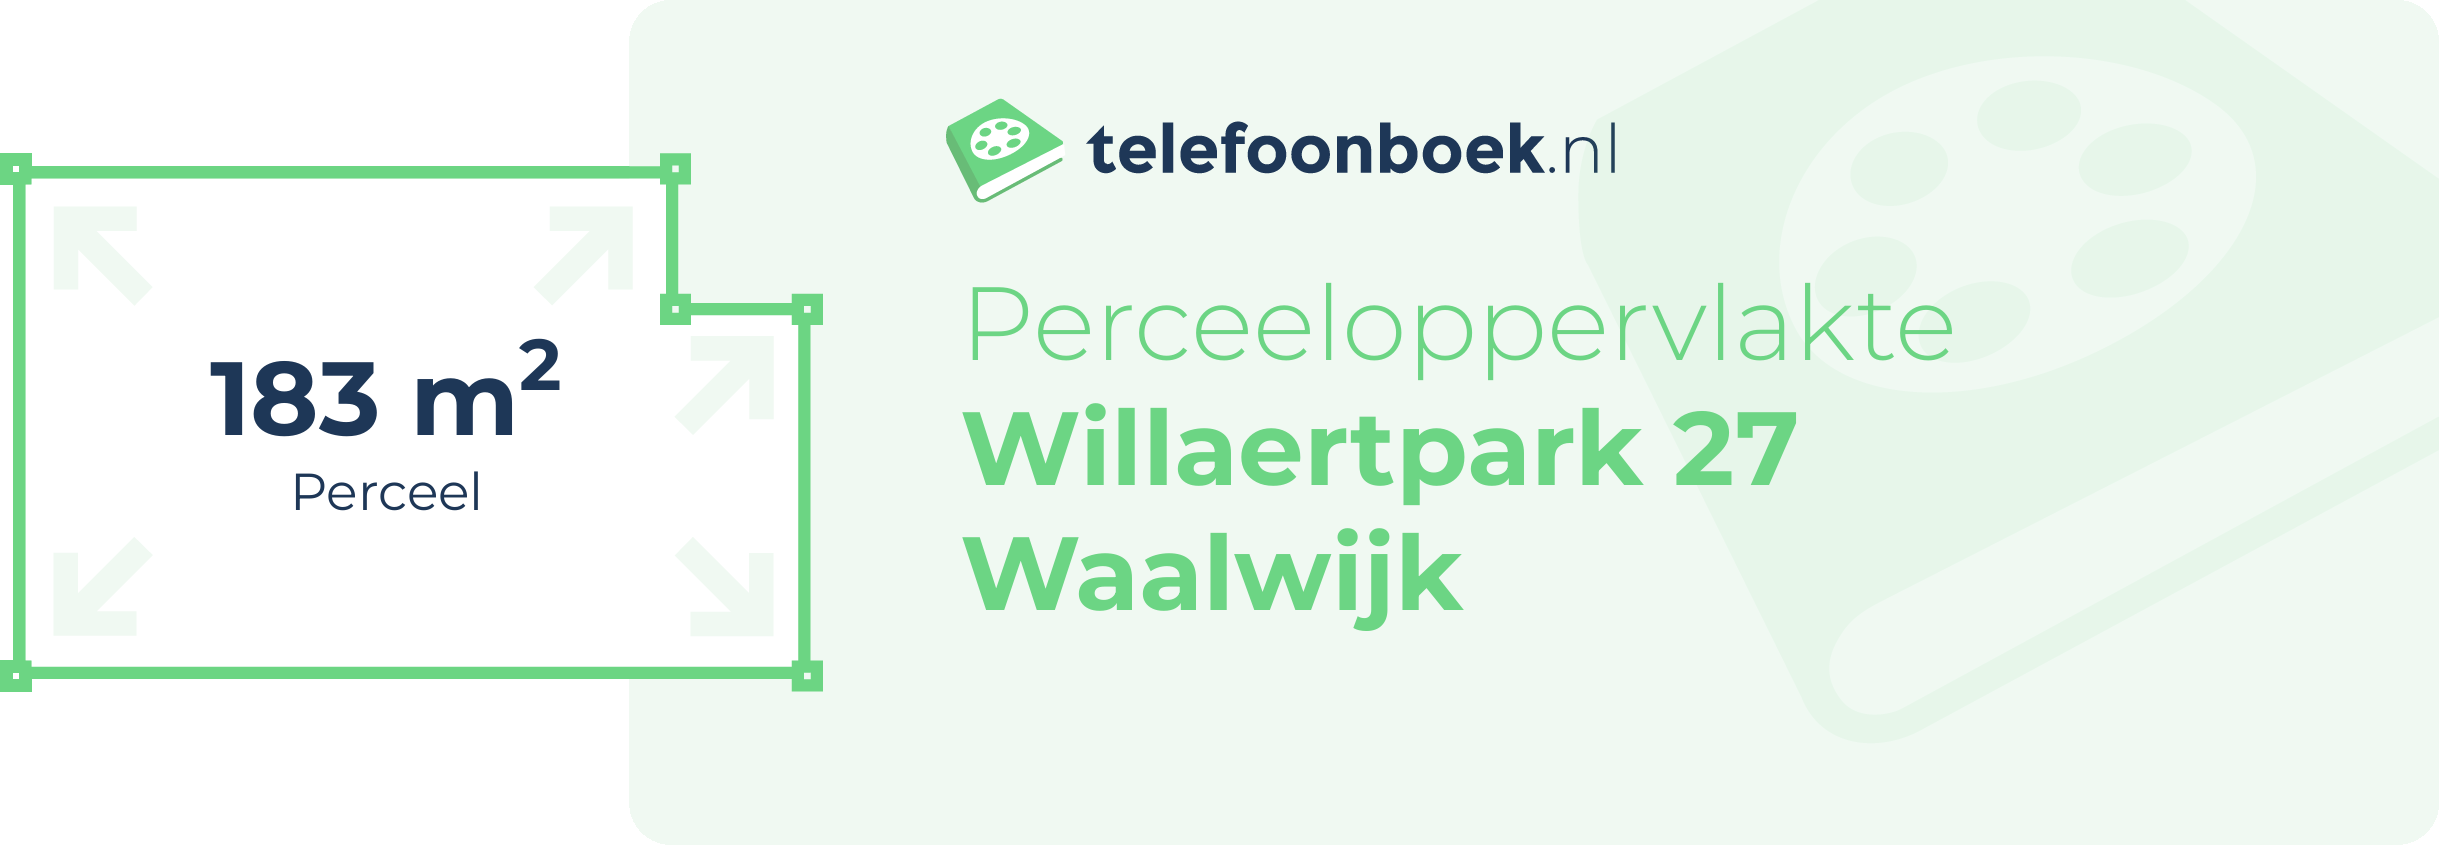 Perceeloppervlakte Willaertpark 27 Waalwijk